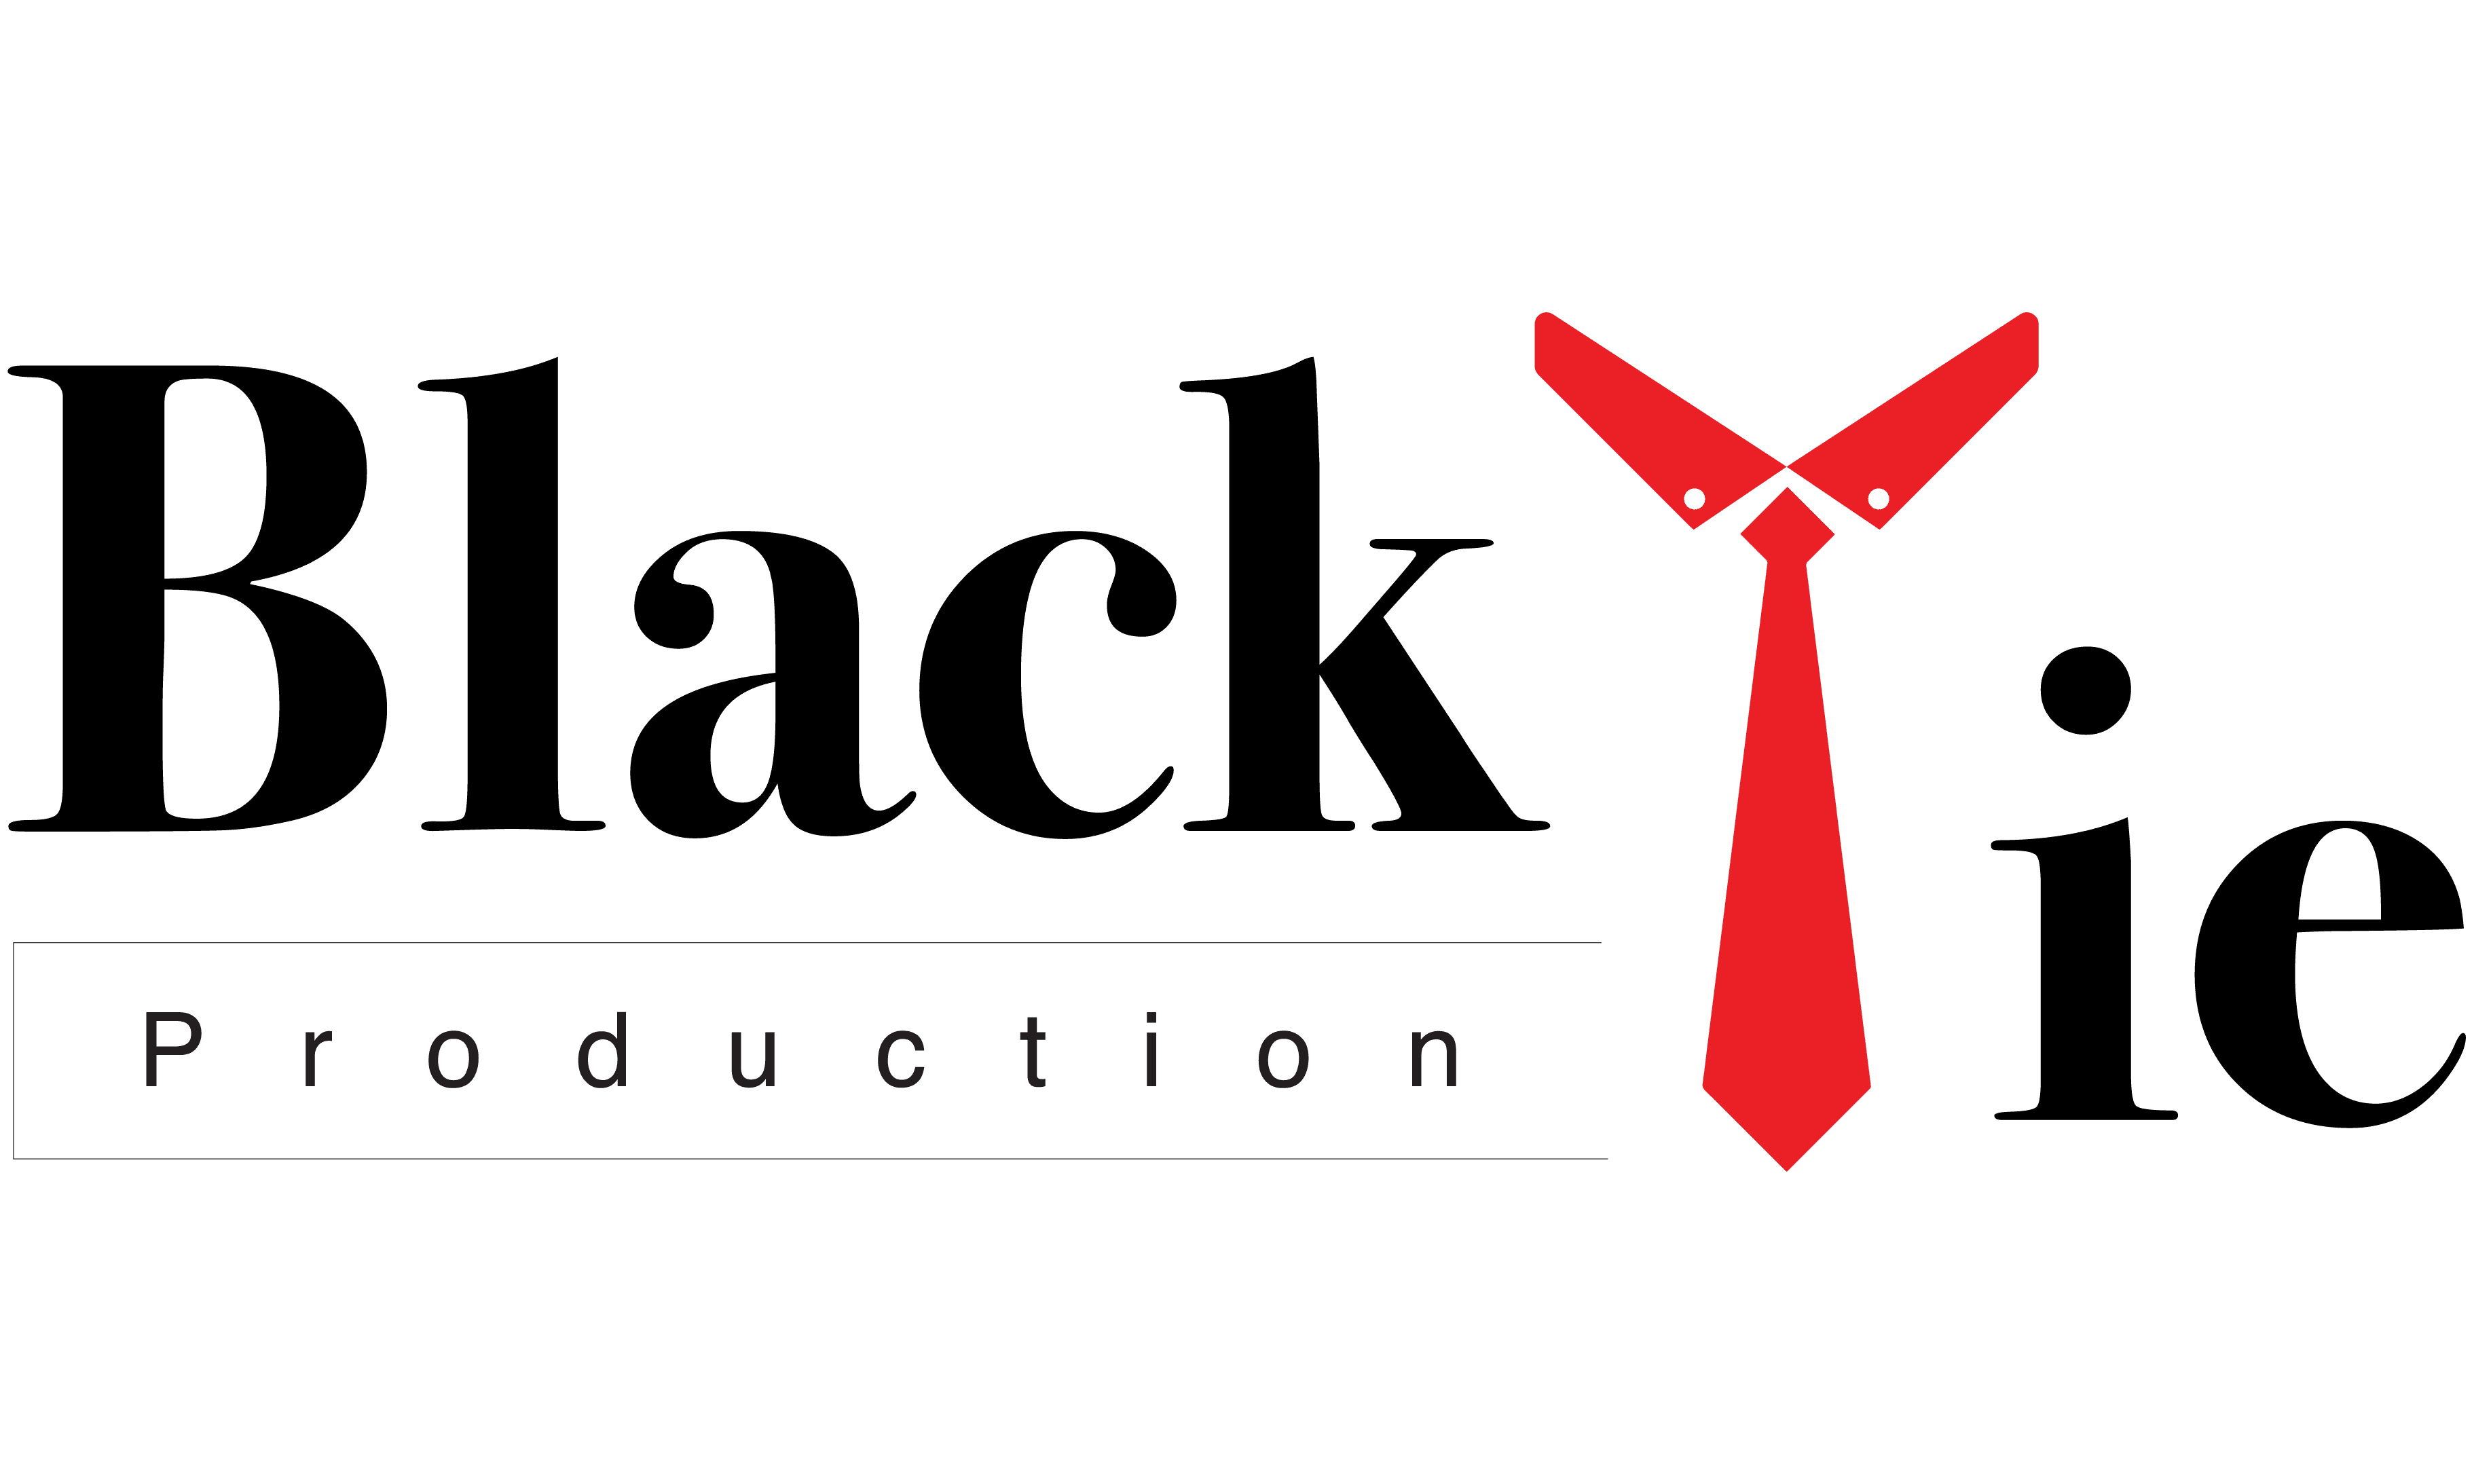 BLACKTIE PRODUCTION